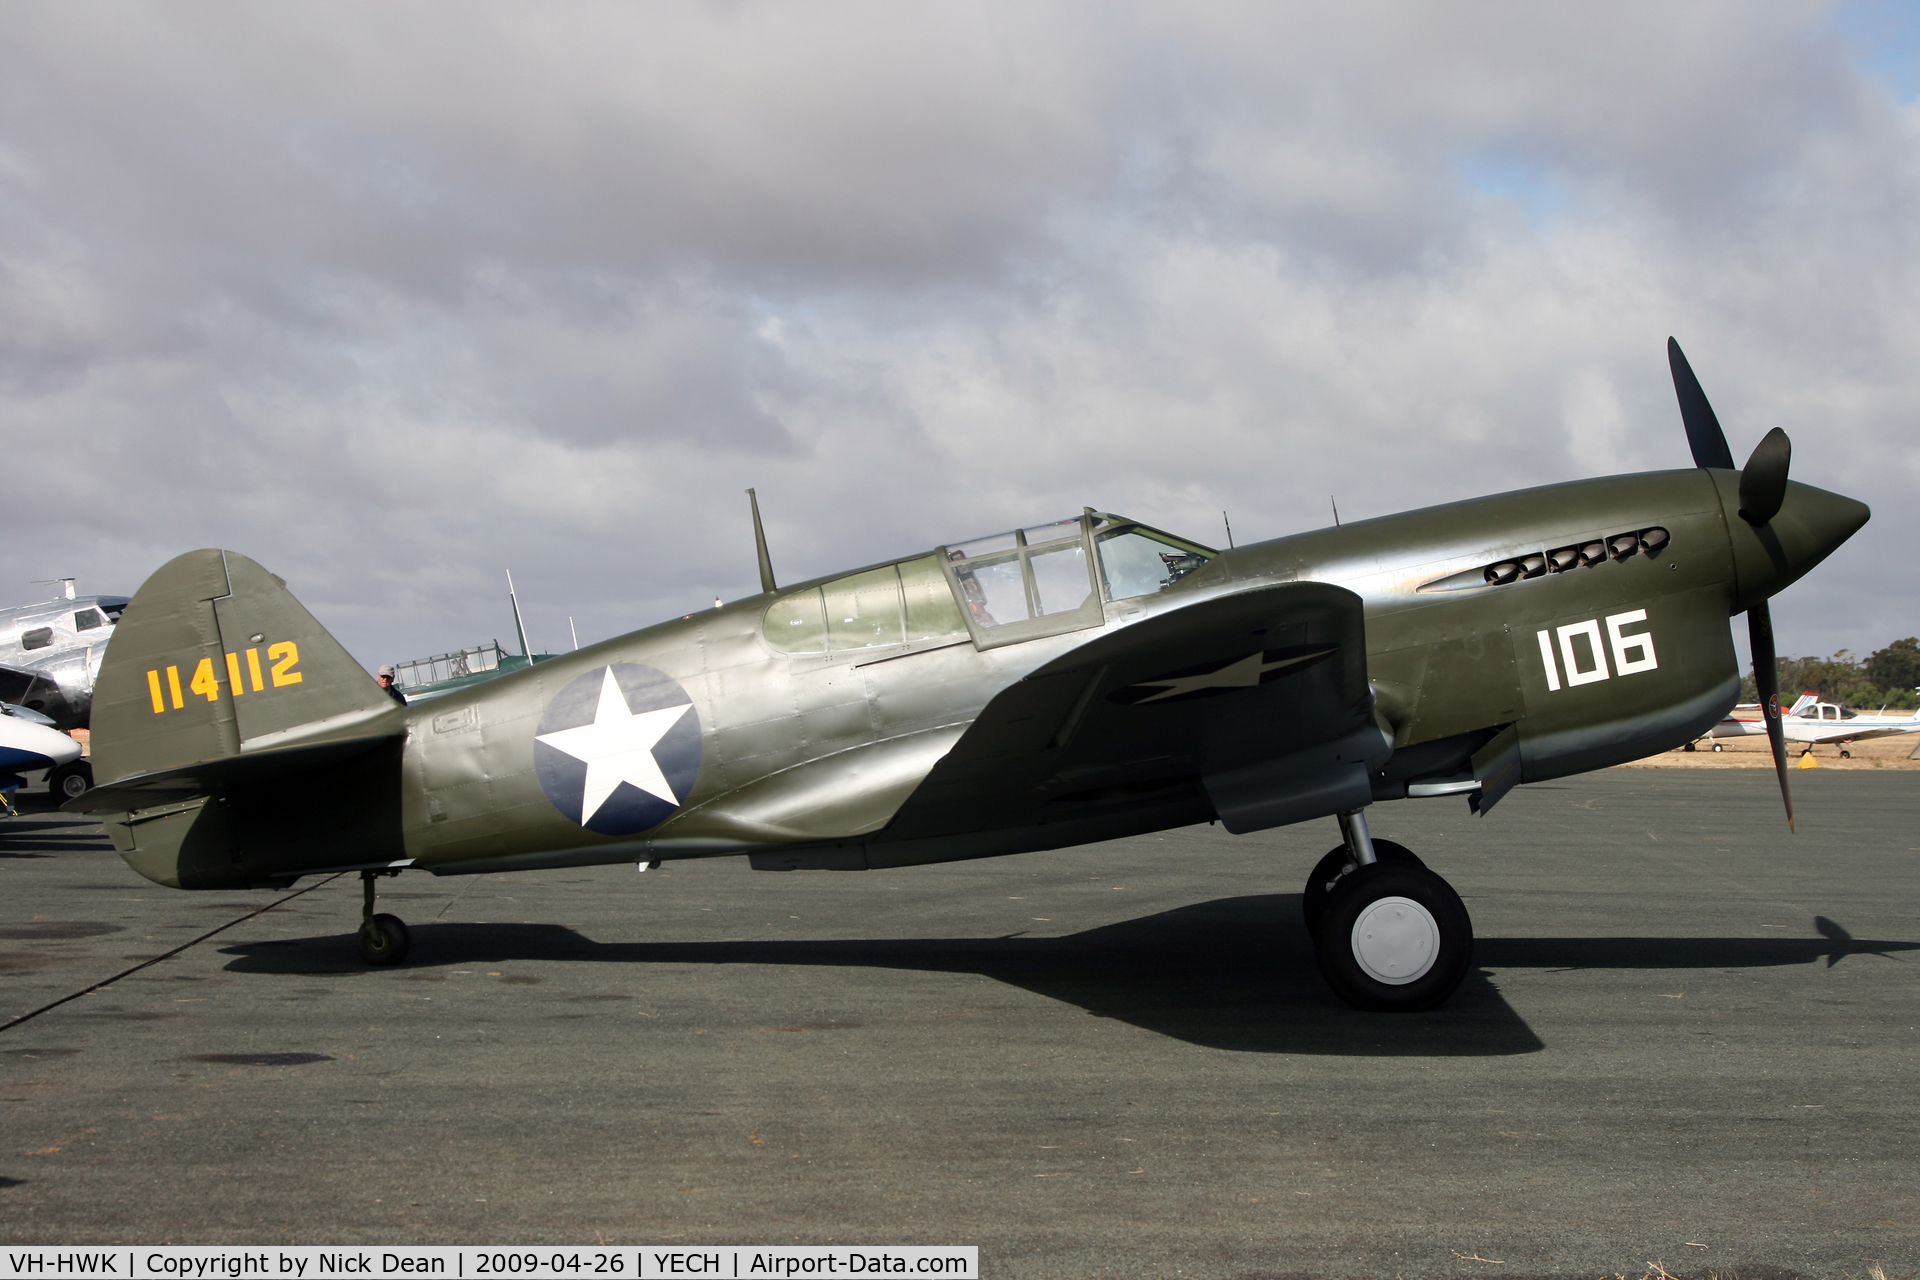 VH-HWK, 1941 Curtiss P-40F Warhawk C/N 41-14112, YECH